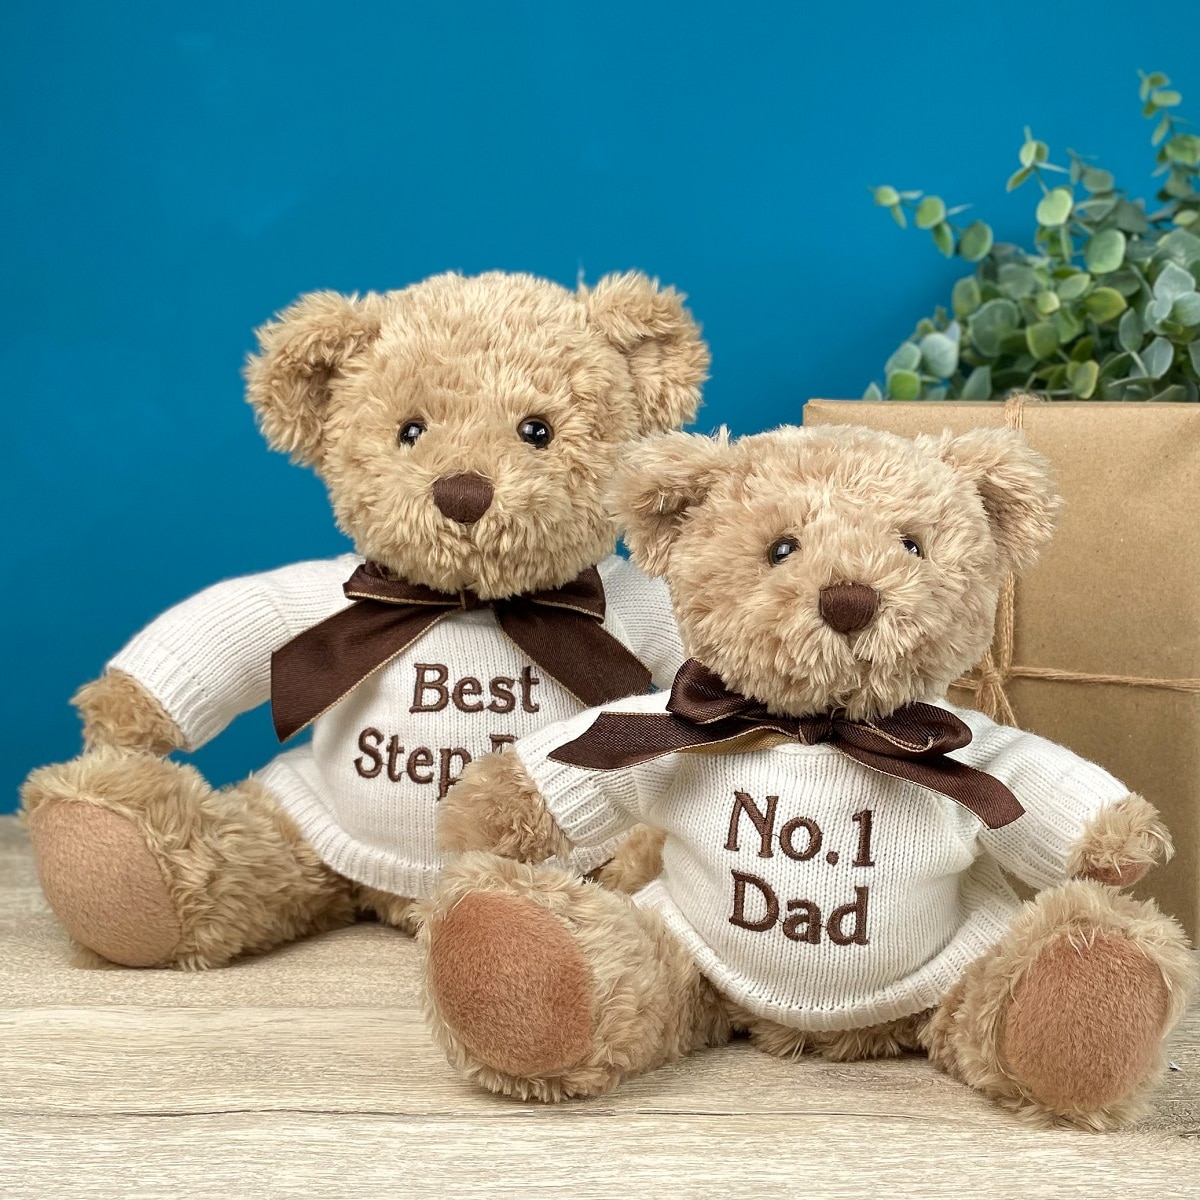 Father's Day Keel sherwood medium teddy bear soft toy